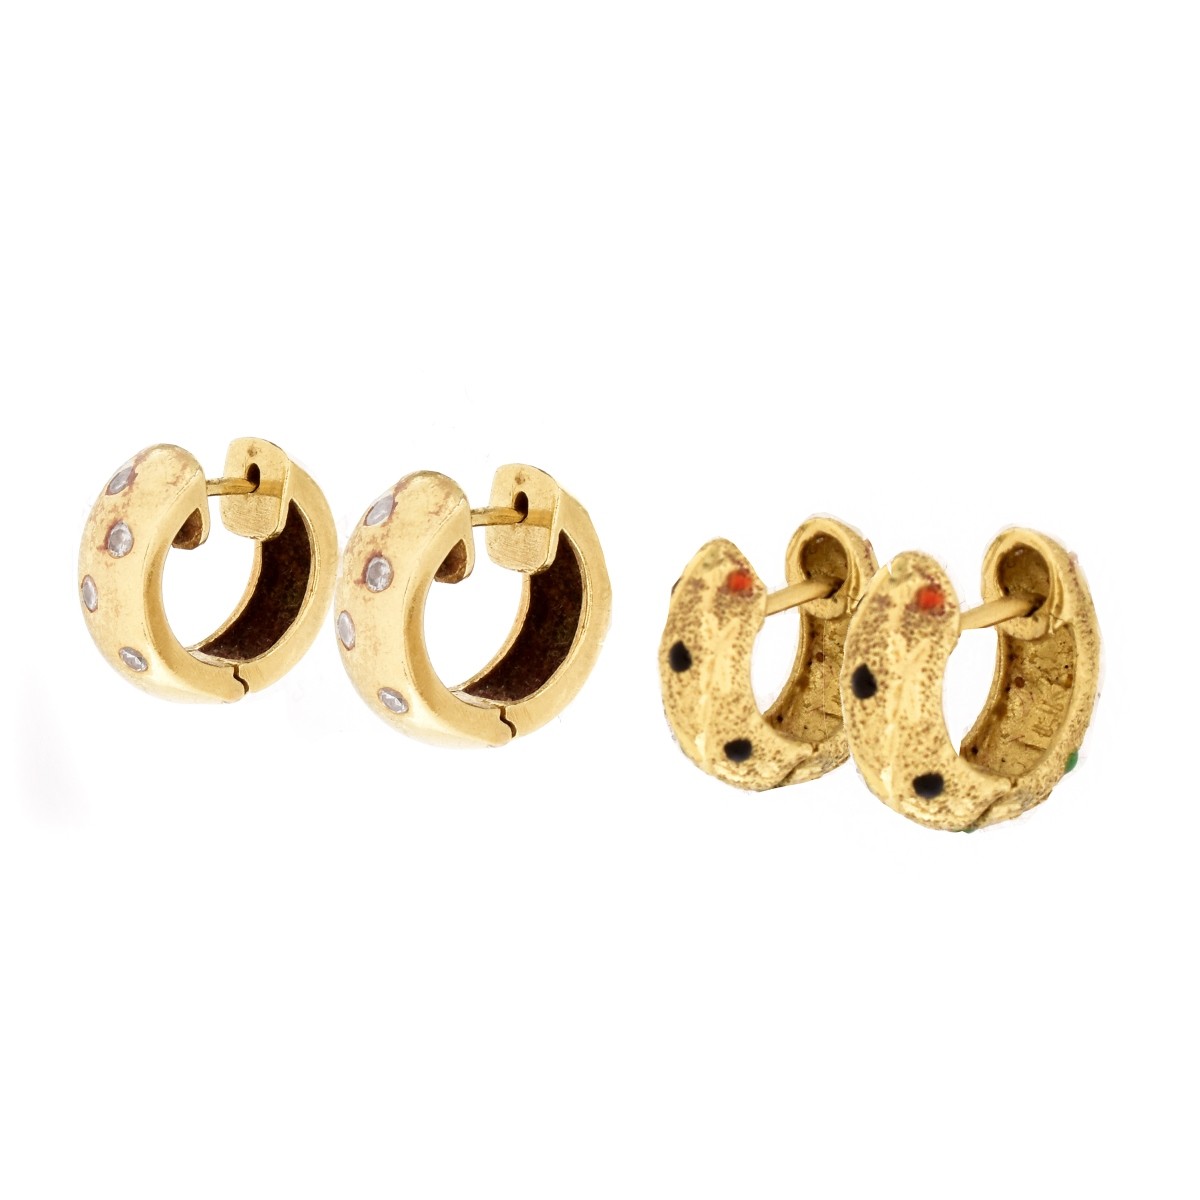 Two (2) Pair of Vintage 14K Gold Huggie Earrings